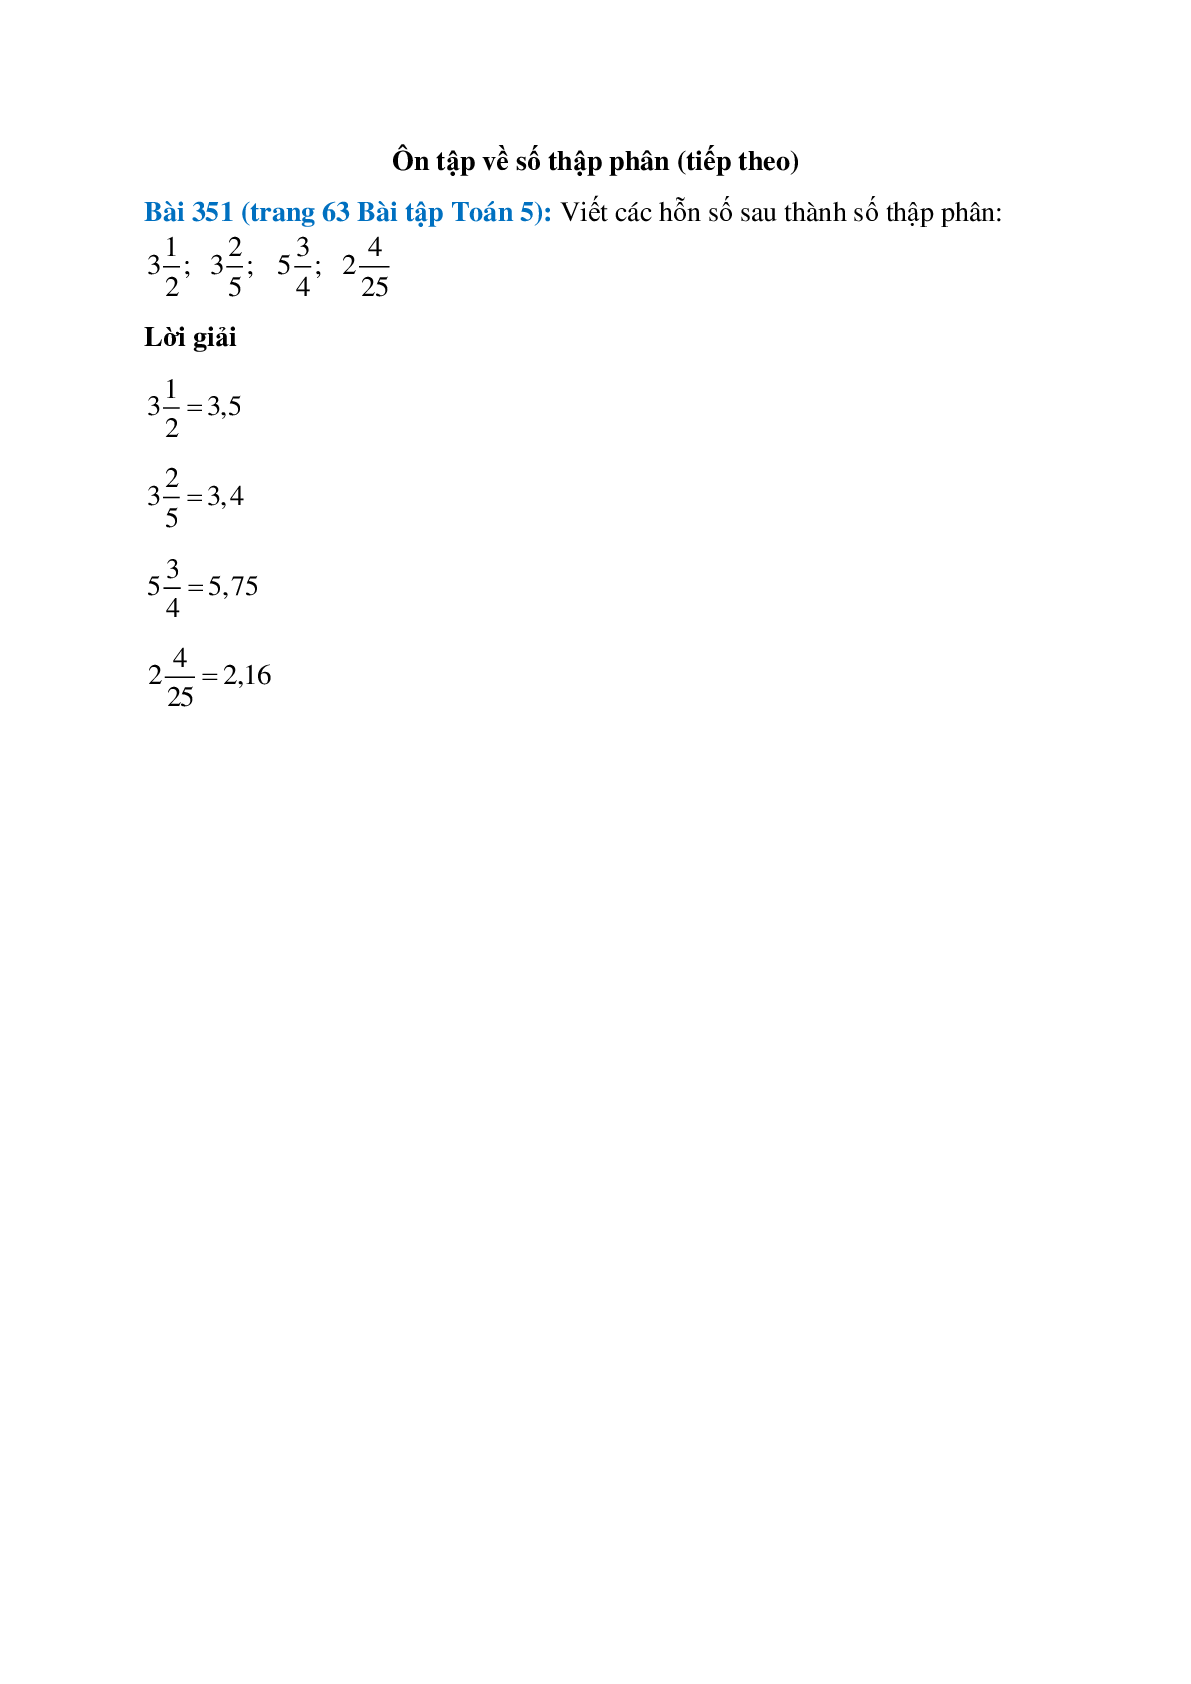 Viết các hỗn số sau thành số thập phân: 3(1/2); 3(2/5) (trang 1)